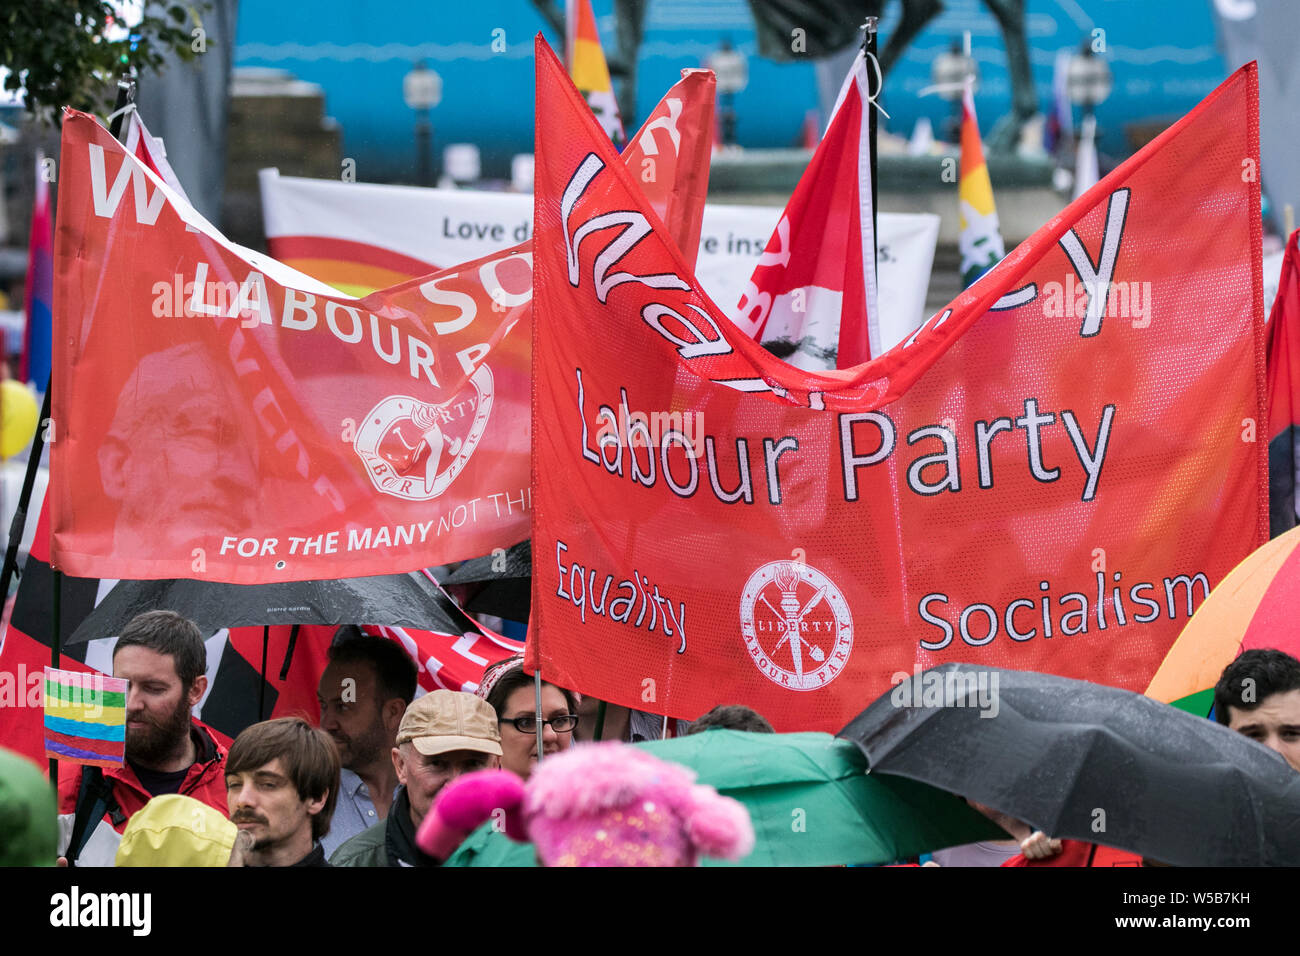 Die Labour Party UK, Massen, sozialistische Banner und Fahnen, politische Plakat-Demonstration winkende rote Banner Schild Liverpool Merseyside. Stockfoto